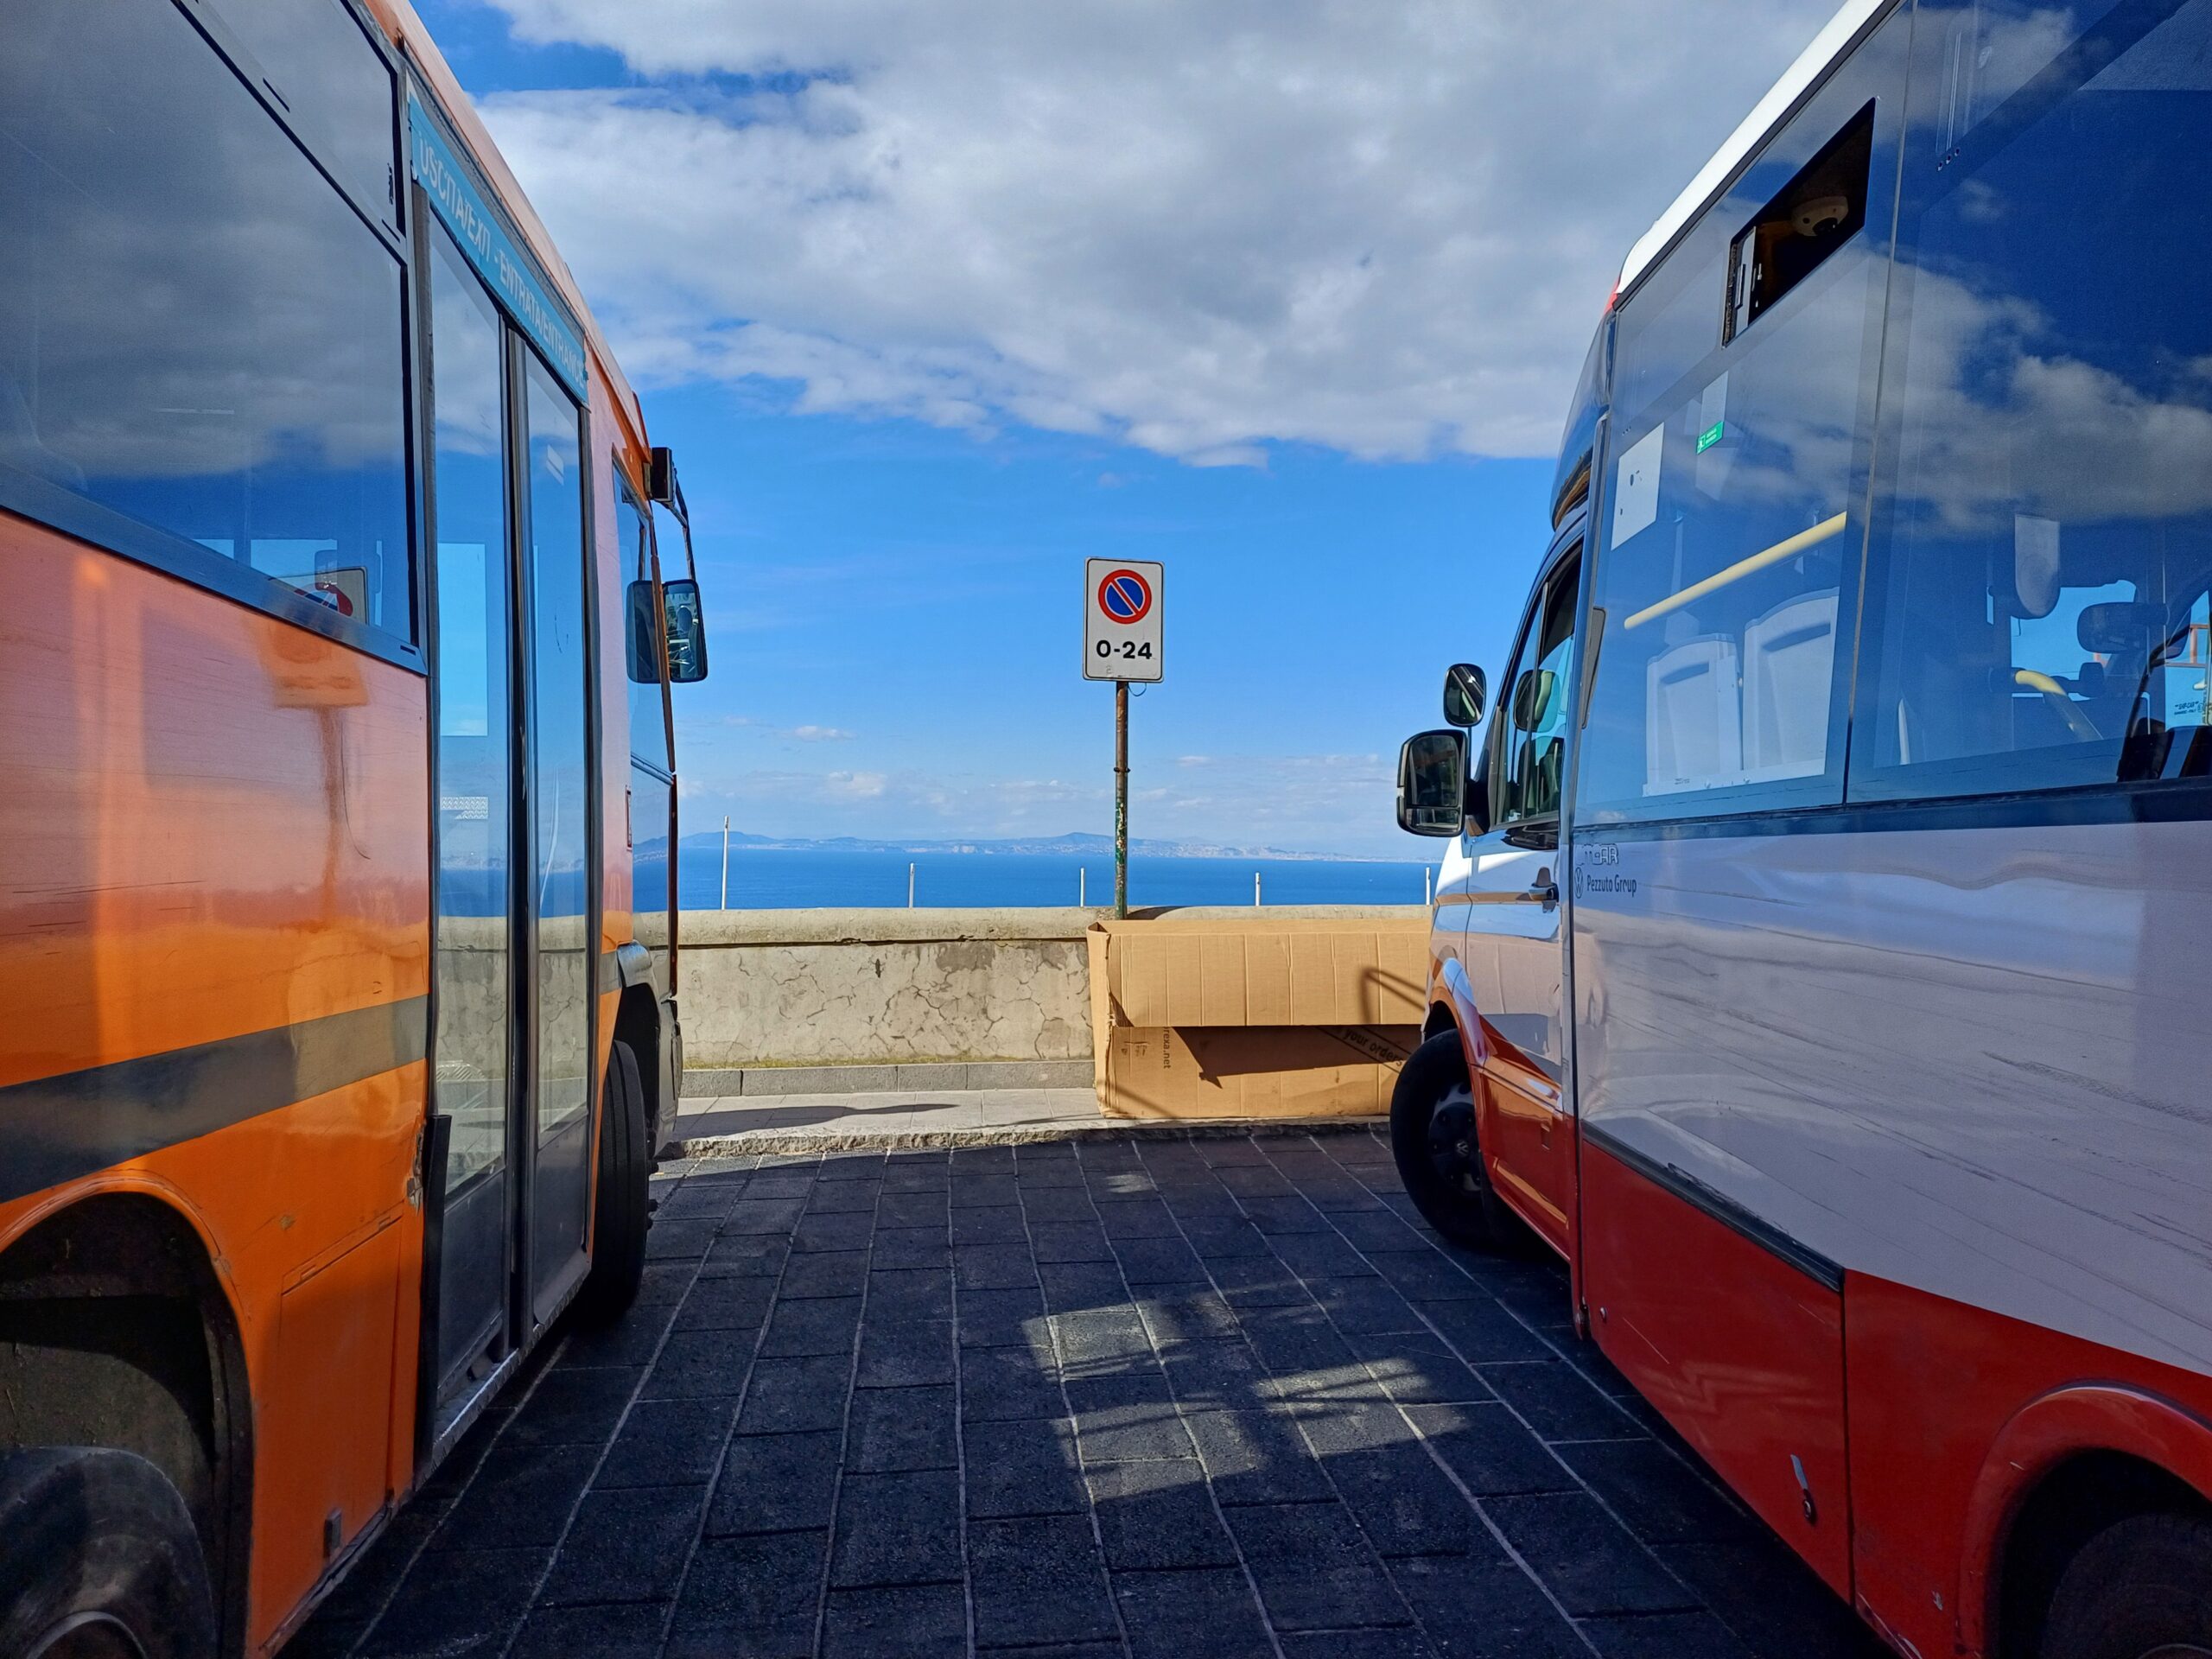 Trasporto pubblico locale: ripristinato il servizio di autobus Atc dopo la riunione in Prefettura